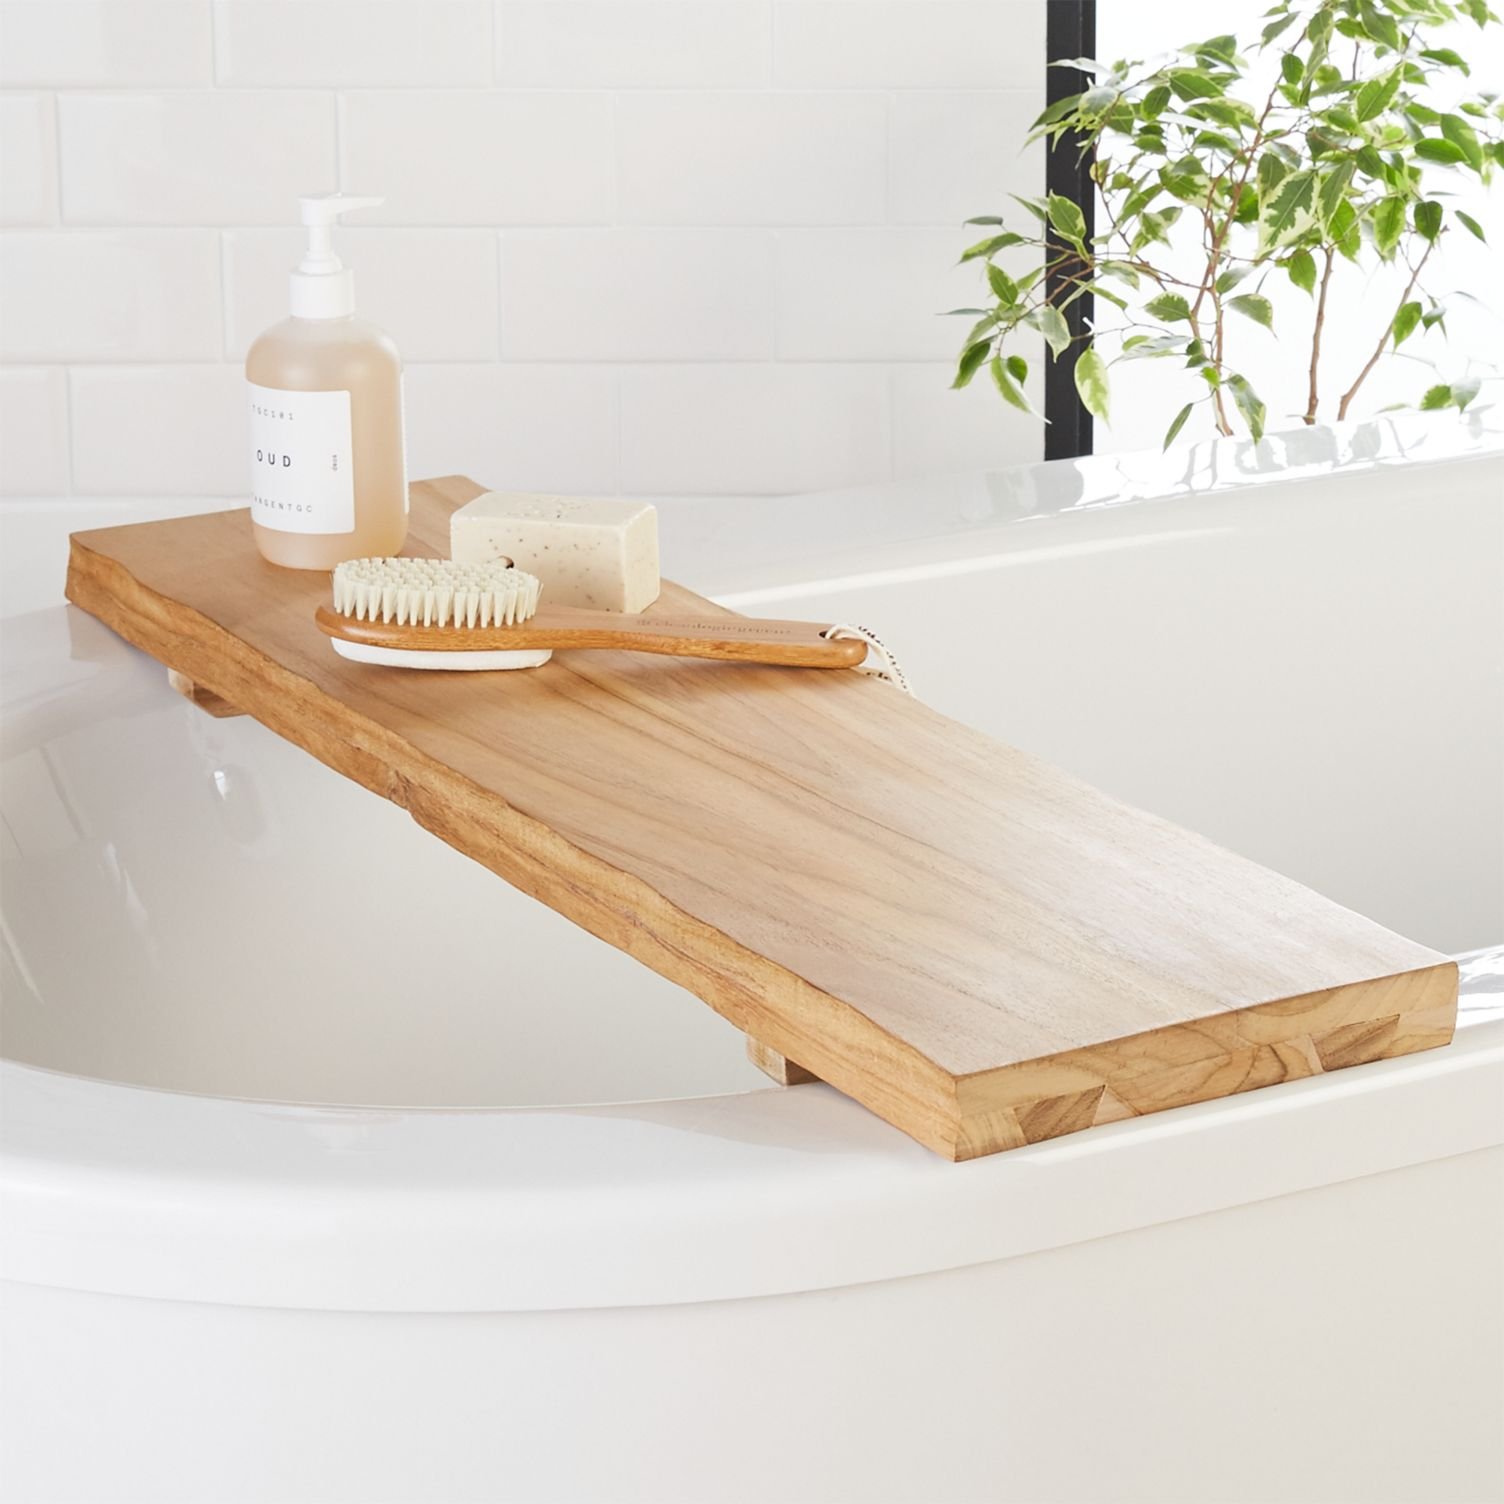 Подставки в ванную купить. Полка на ванну деревянная. Подставка на ванну деревянная. Доска для ванной деревянная. Деревянная полка в ванную.